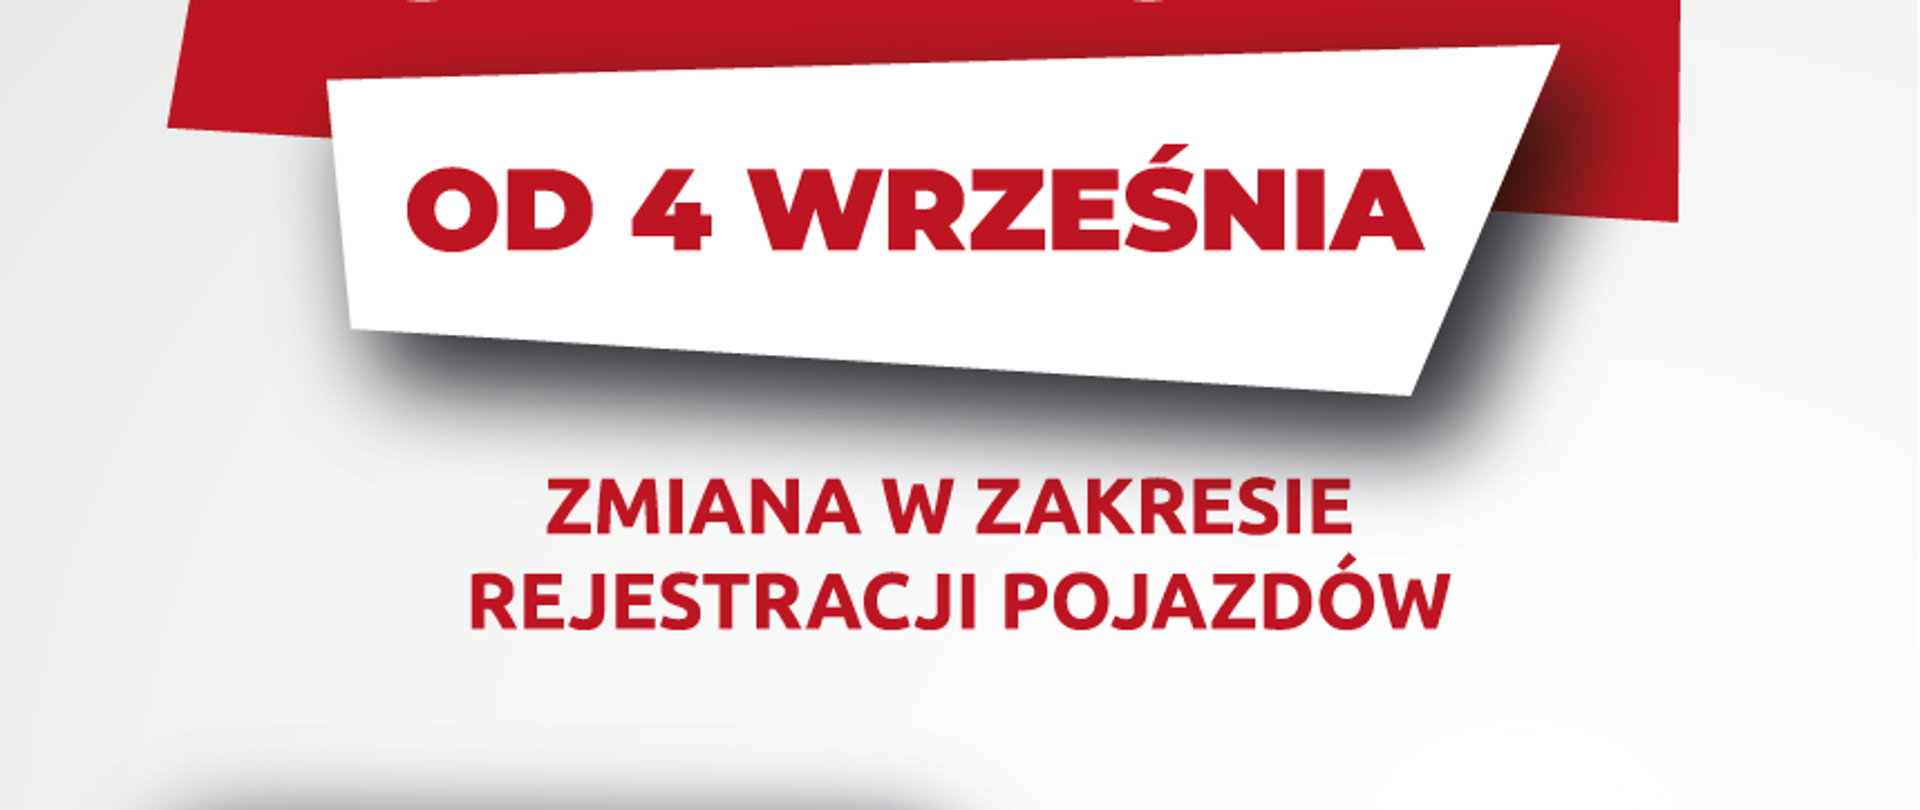 Naklejka rejestracyjna na pojazd, karta pojazdu i informacja, że od 4 września są zmiany w zakresie rejestracji pojazdów w Polsce 